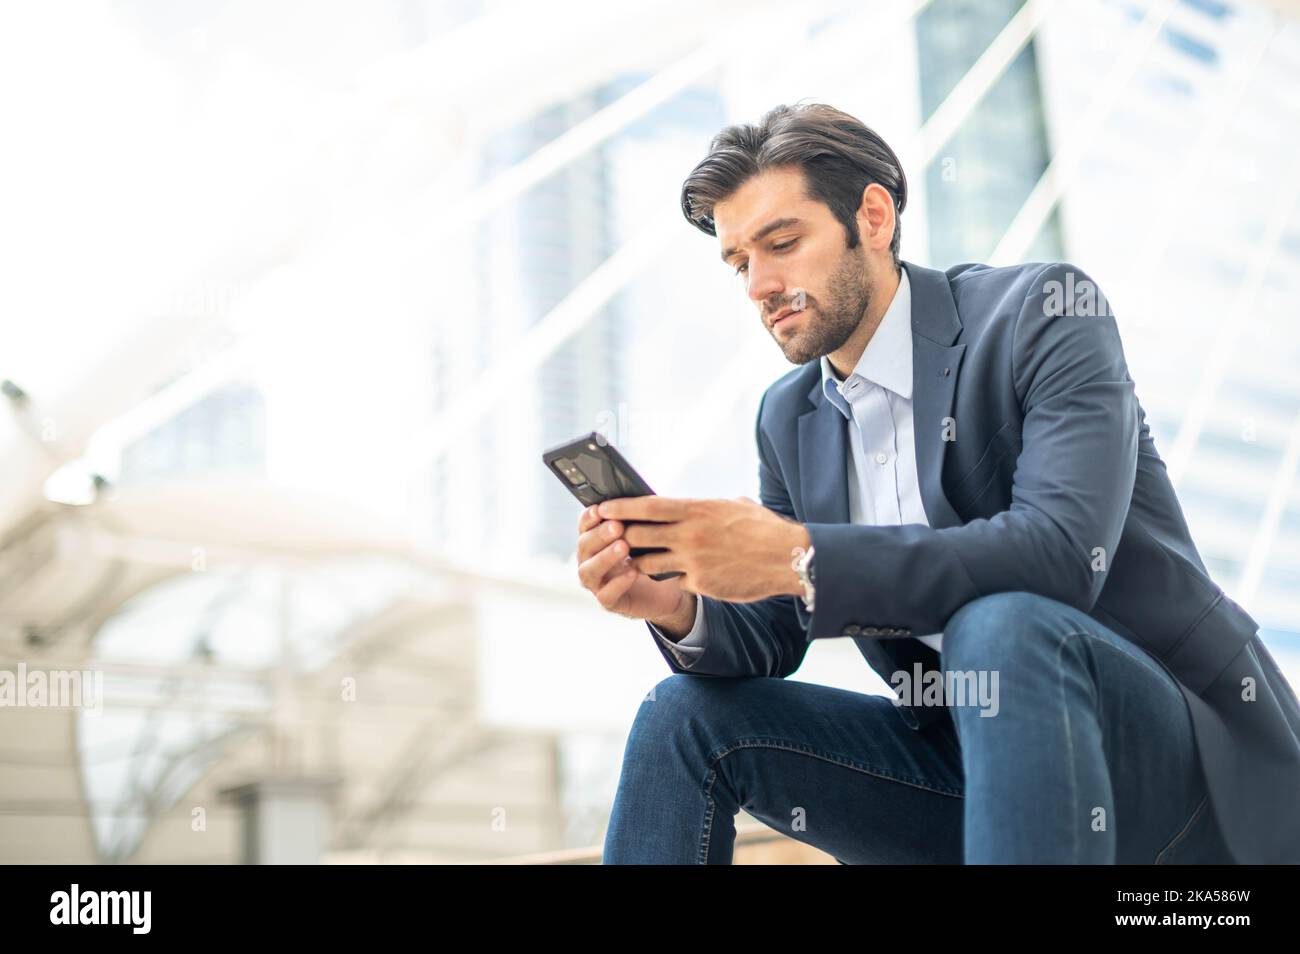 Primo piano di un giovane uomo serio caucasico che utilizza un moderno dispositivo smartphone mentre si siede in un'area pubblica. Foto Stock